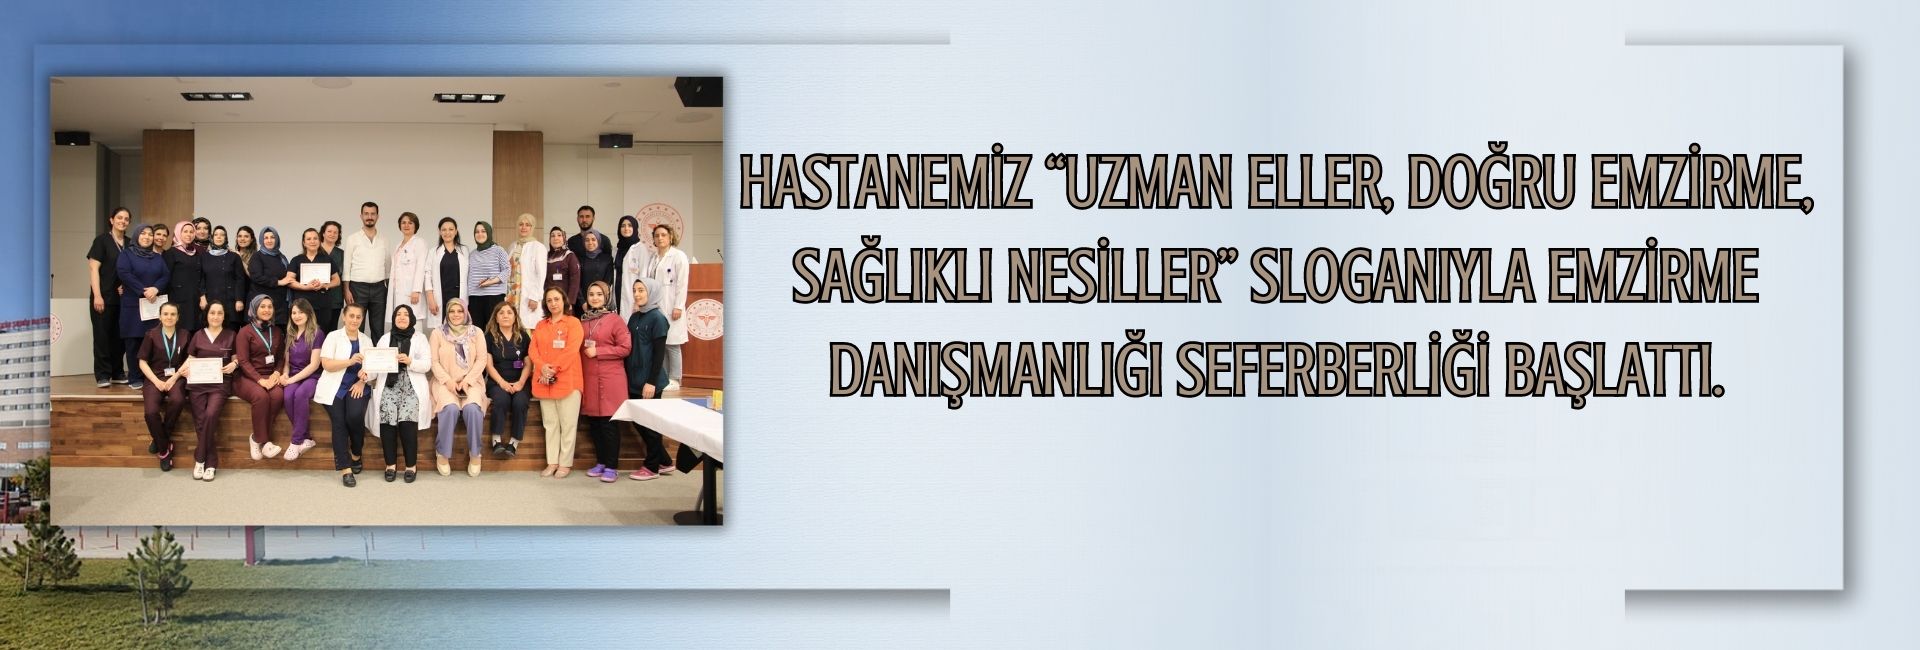 Elazığ Fethi Sekin Şehir Hastanesi “Uzman Eller, Doğru Emzirme, Sağlıklı Nesiller” sloganıyla Emzirme Danışmanlığı Seferberliği başlattı.